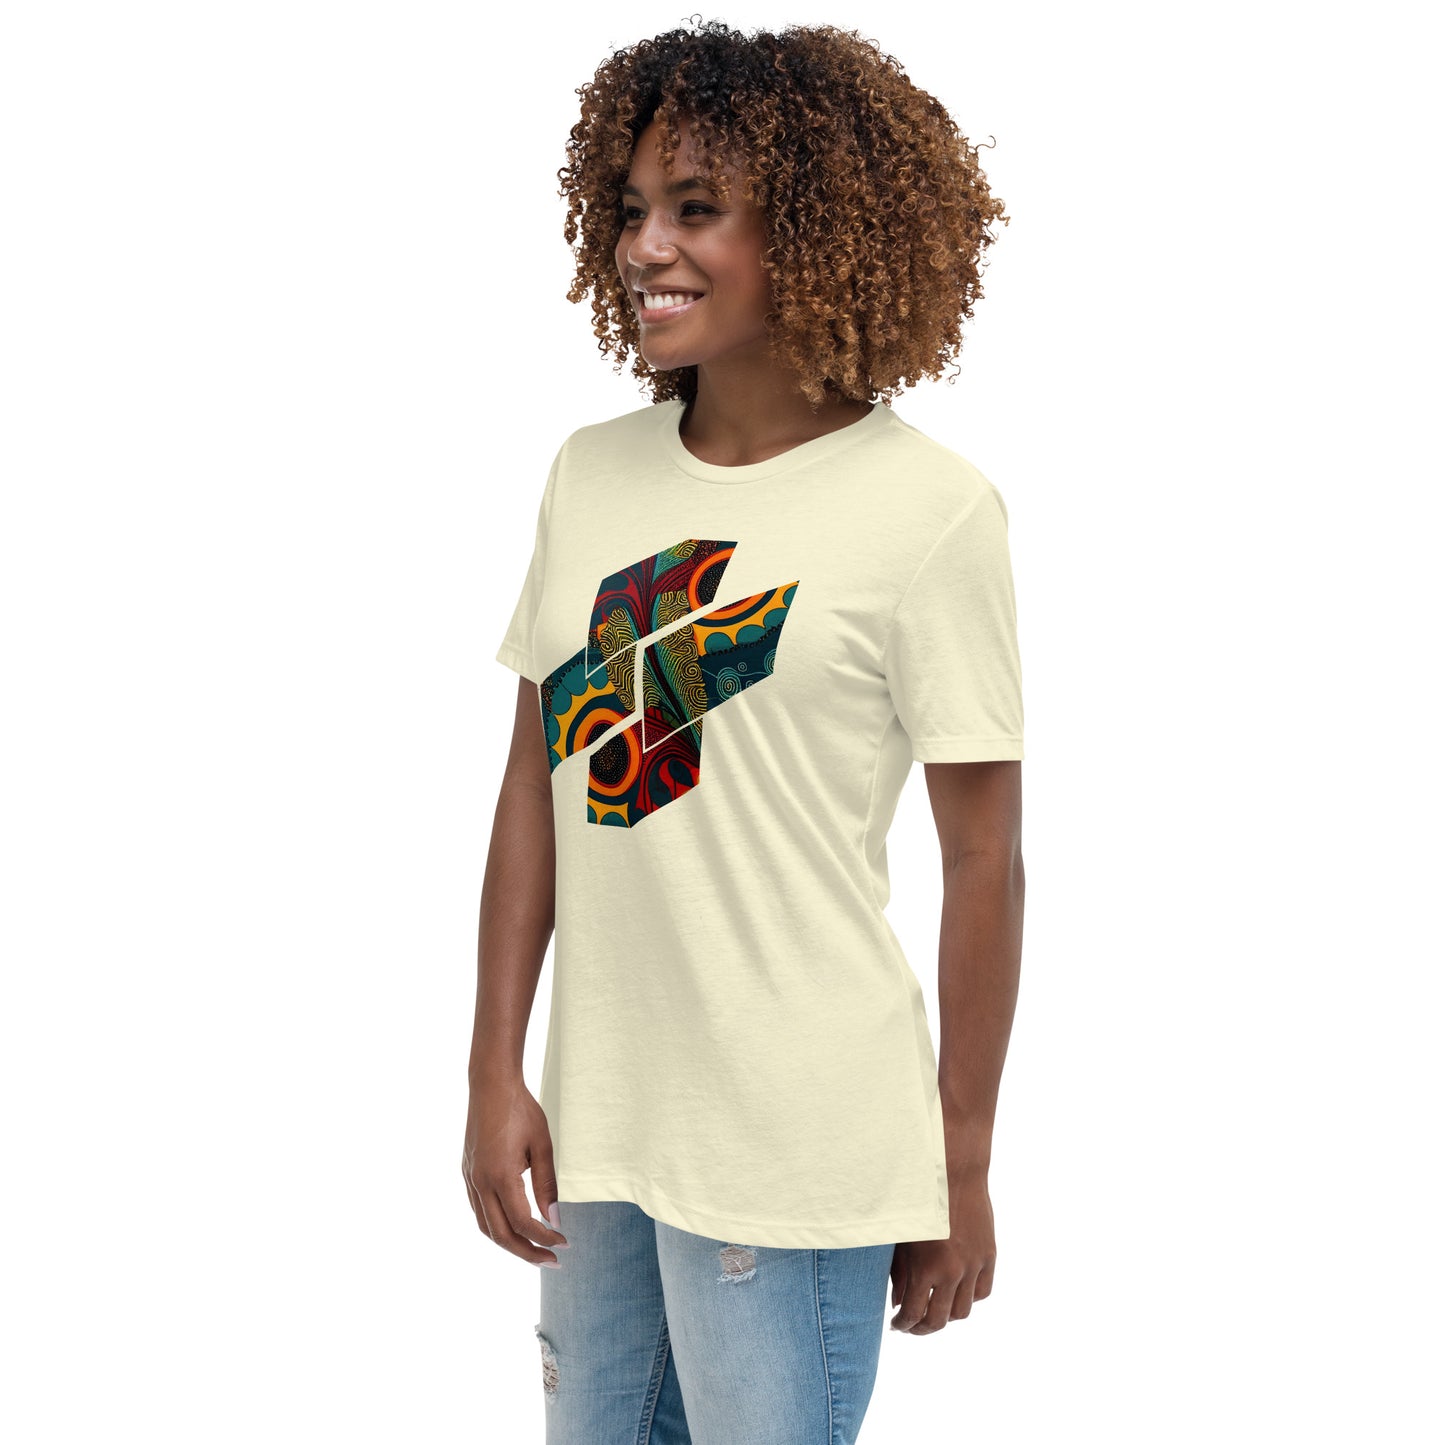 Stunning Women's African Ankara-Inspired T-Shirt Design